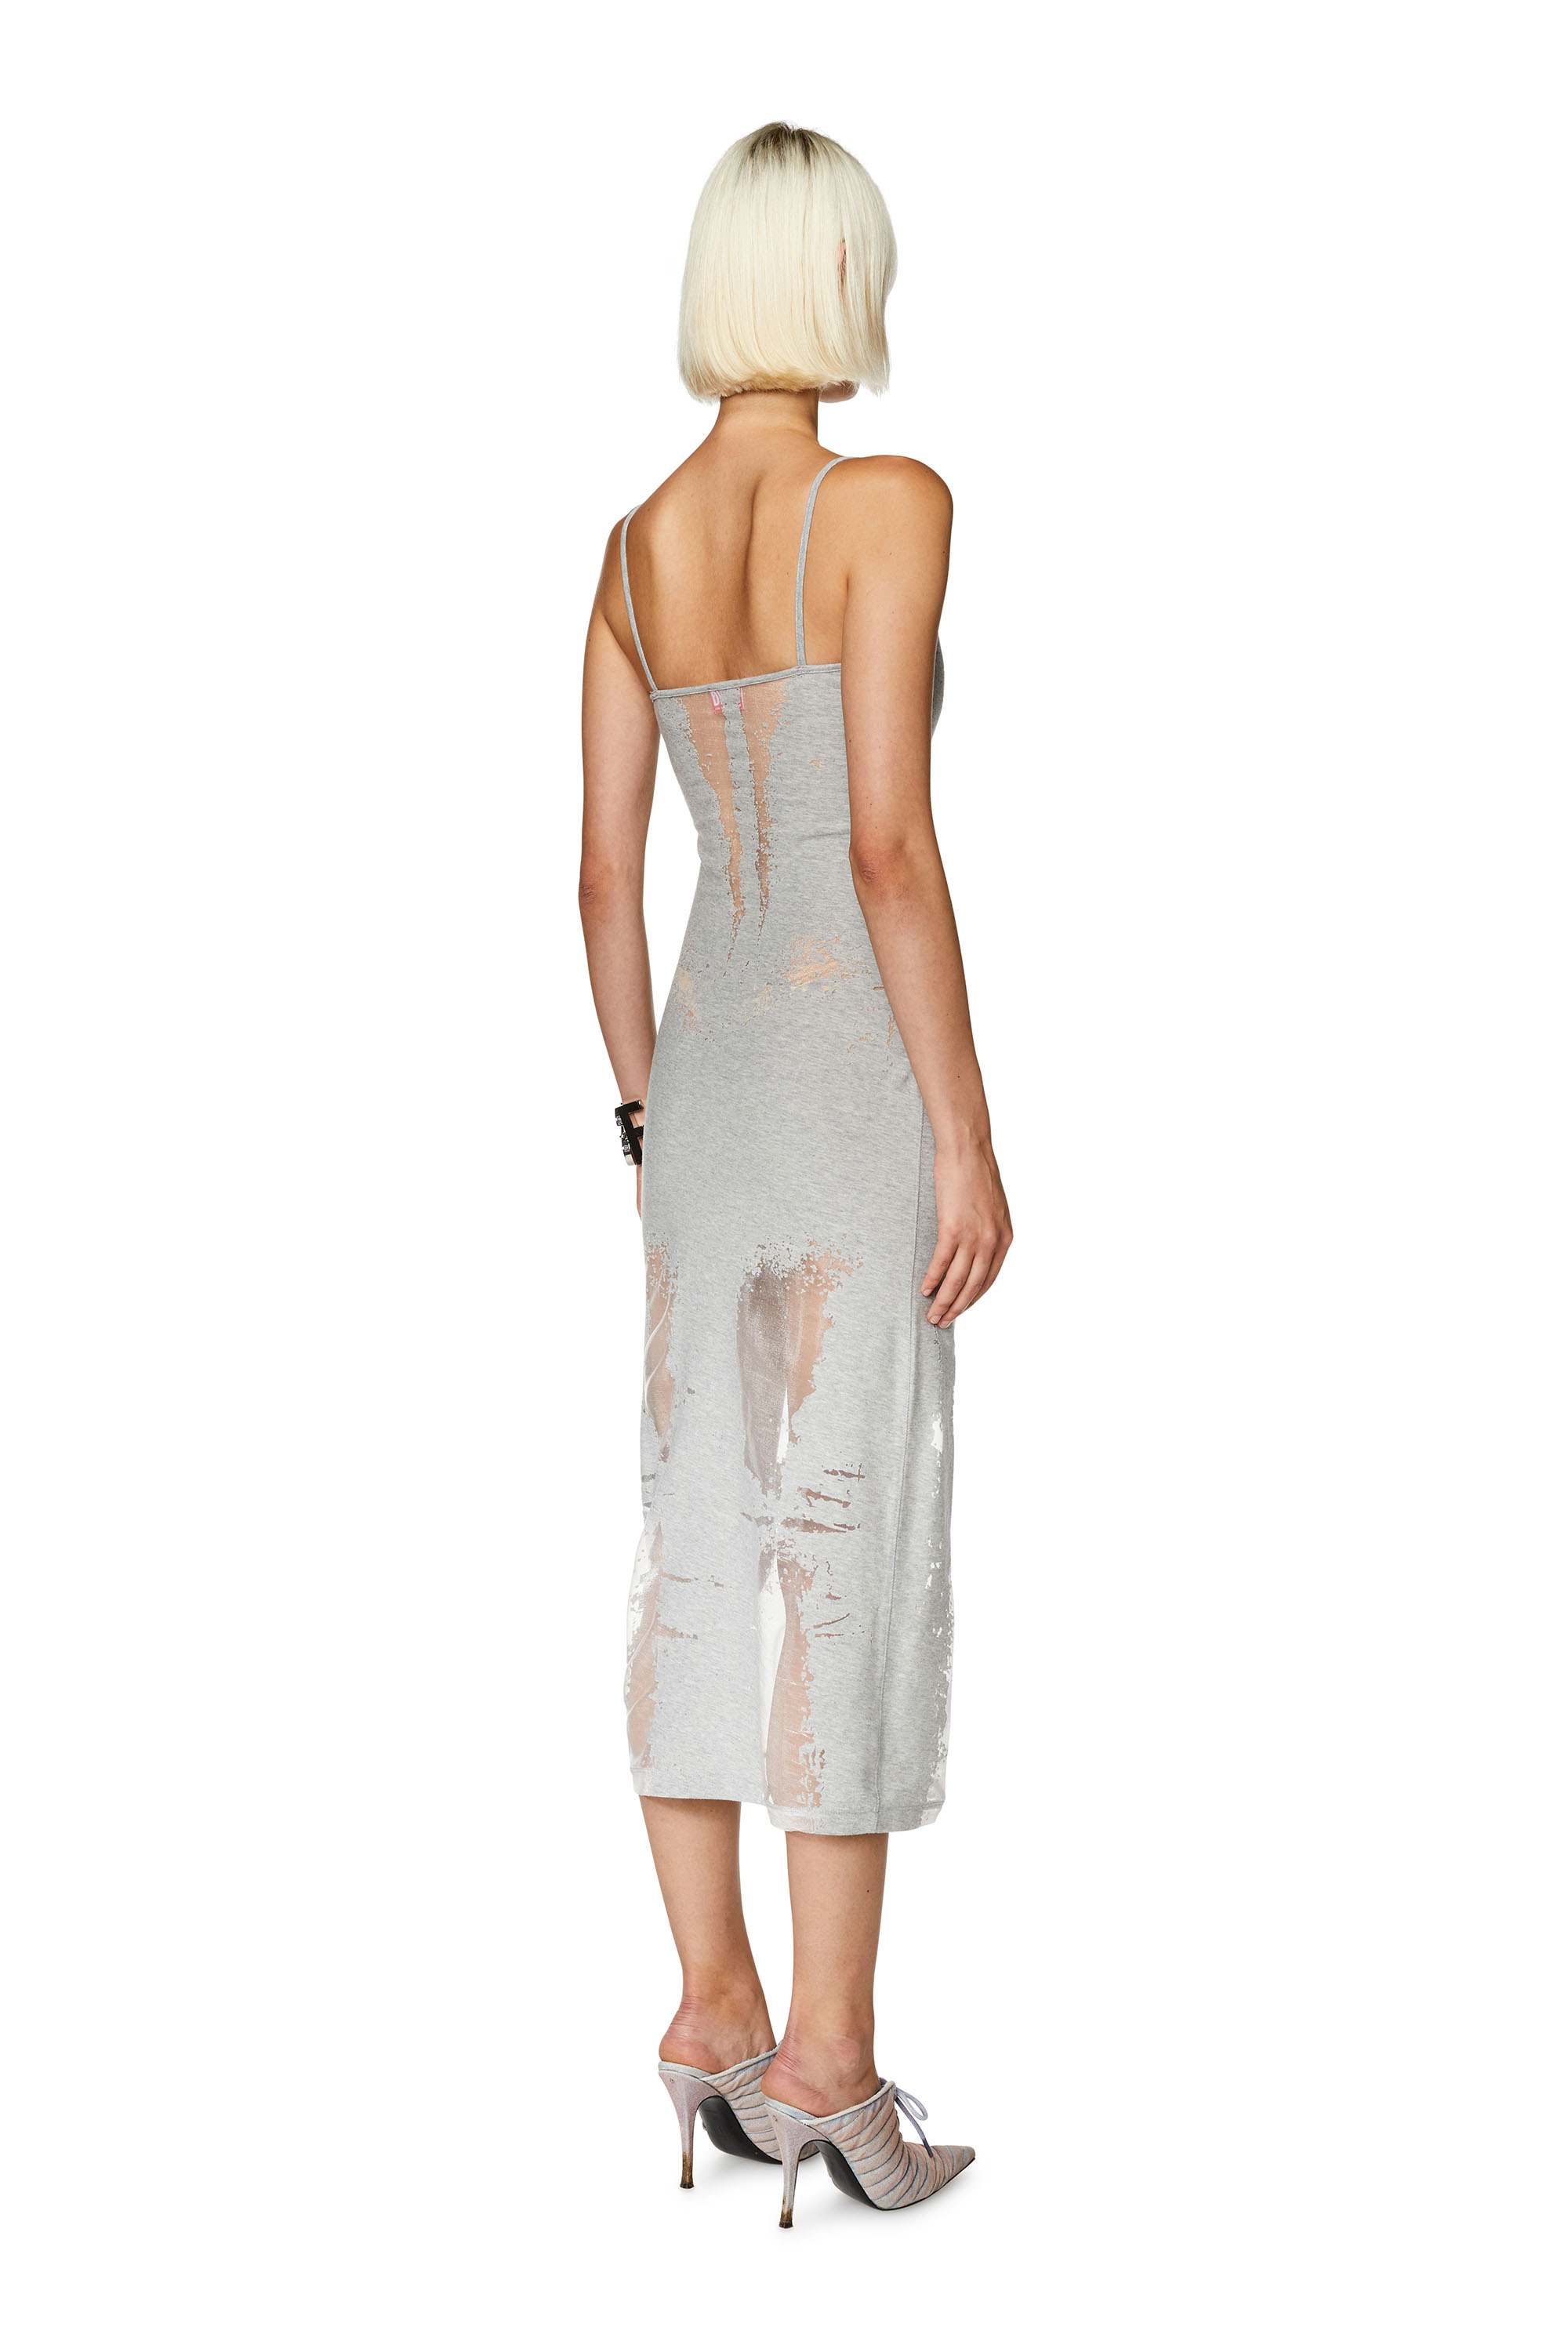 Diesel - Kleid aus Jersey mit transparenten Effekten - Kleider - Damen - Grau